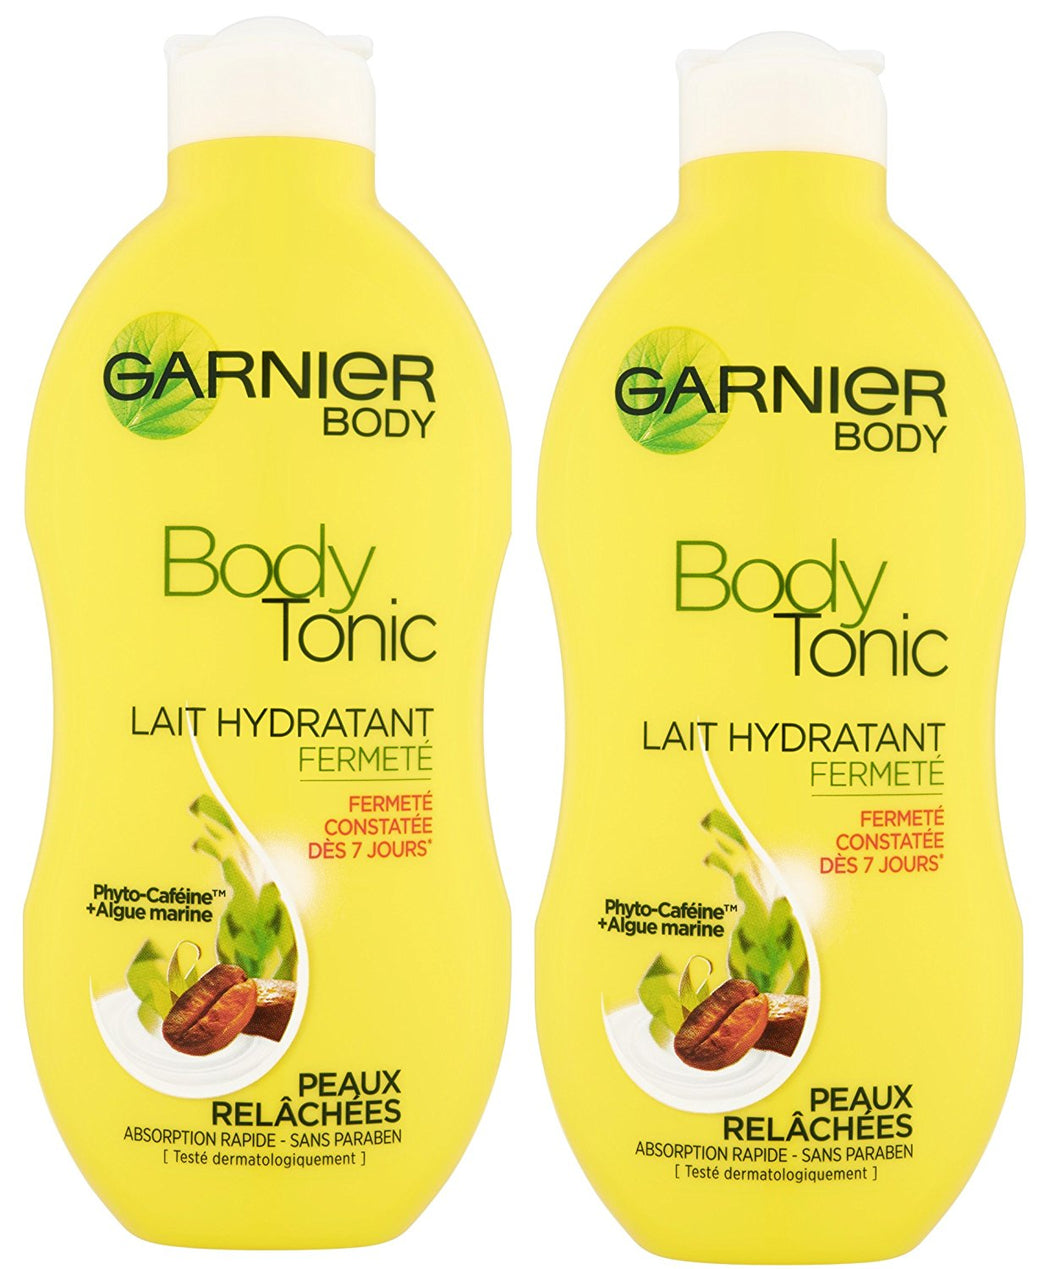 Garnier - Bodytonic - Lait corps -  Hydratant fermeté peaux relâchées Lot de 2